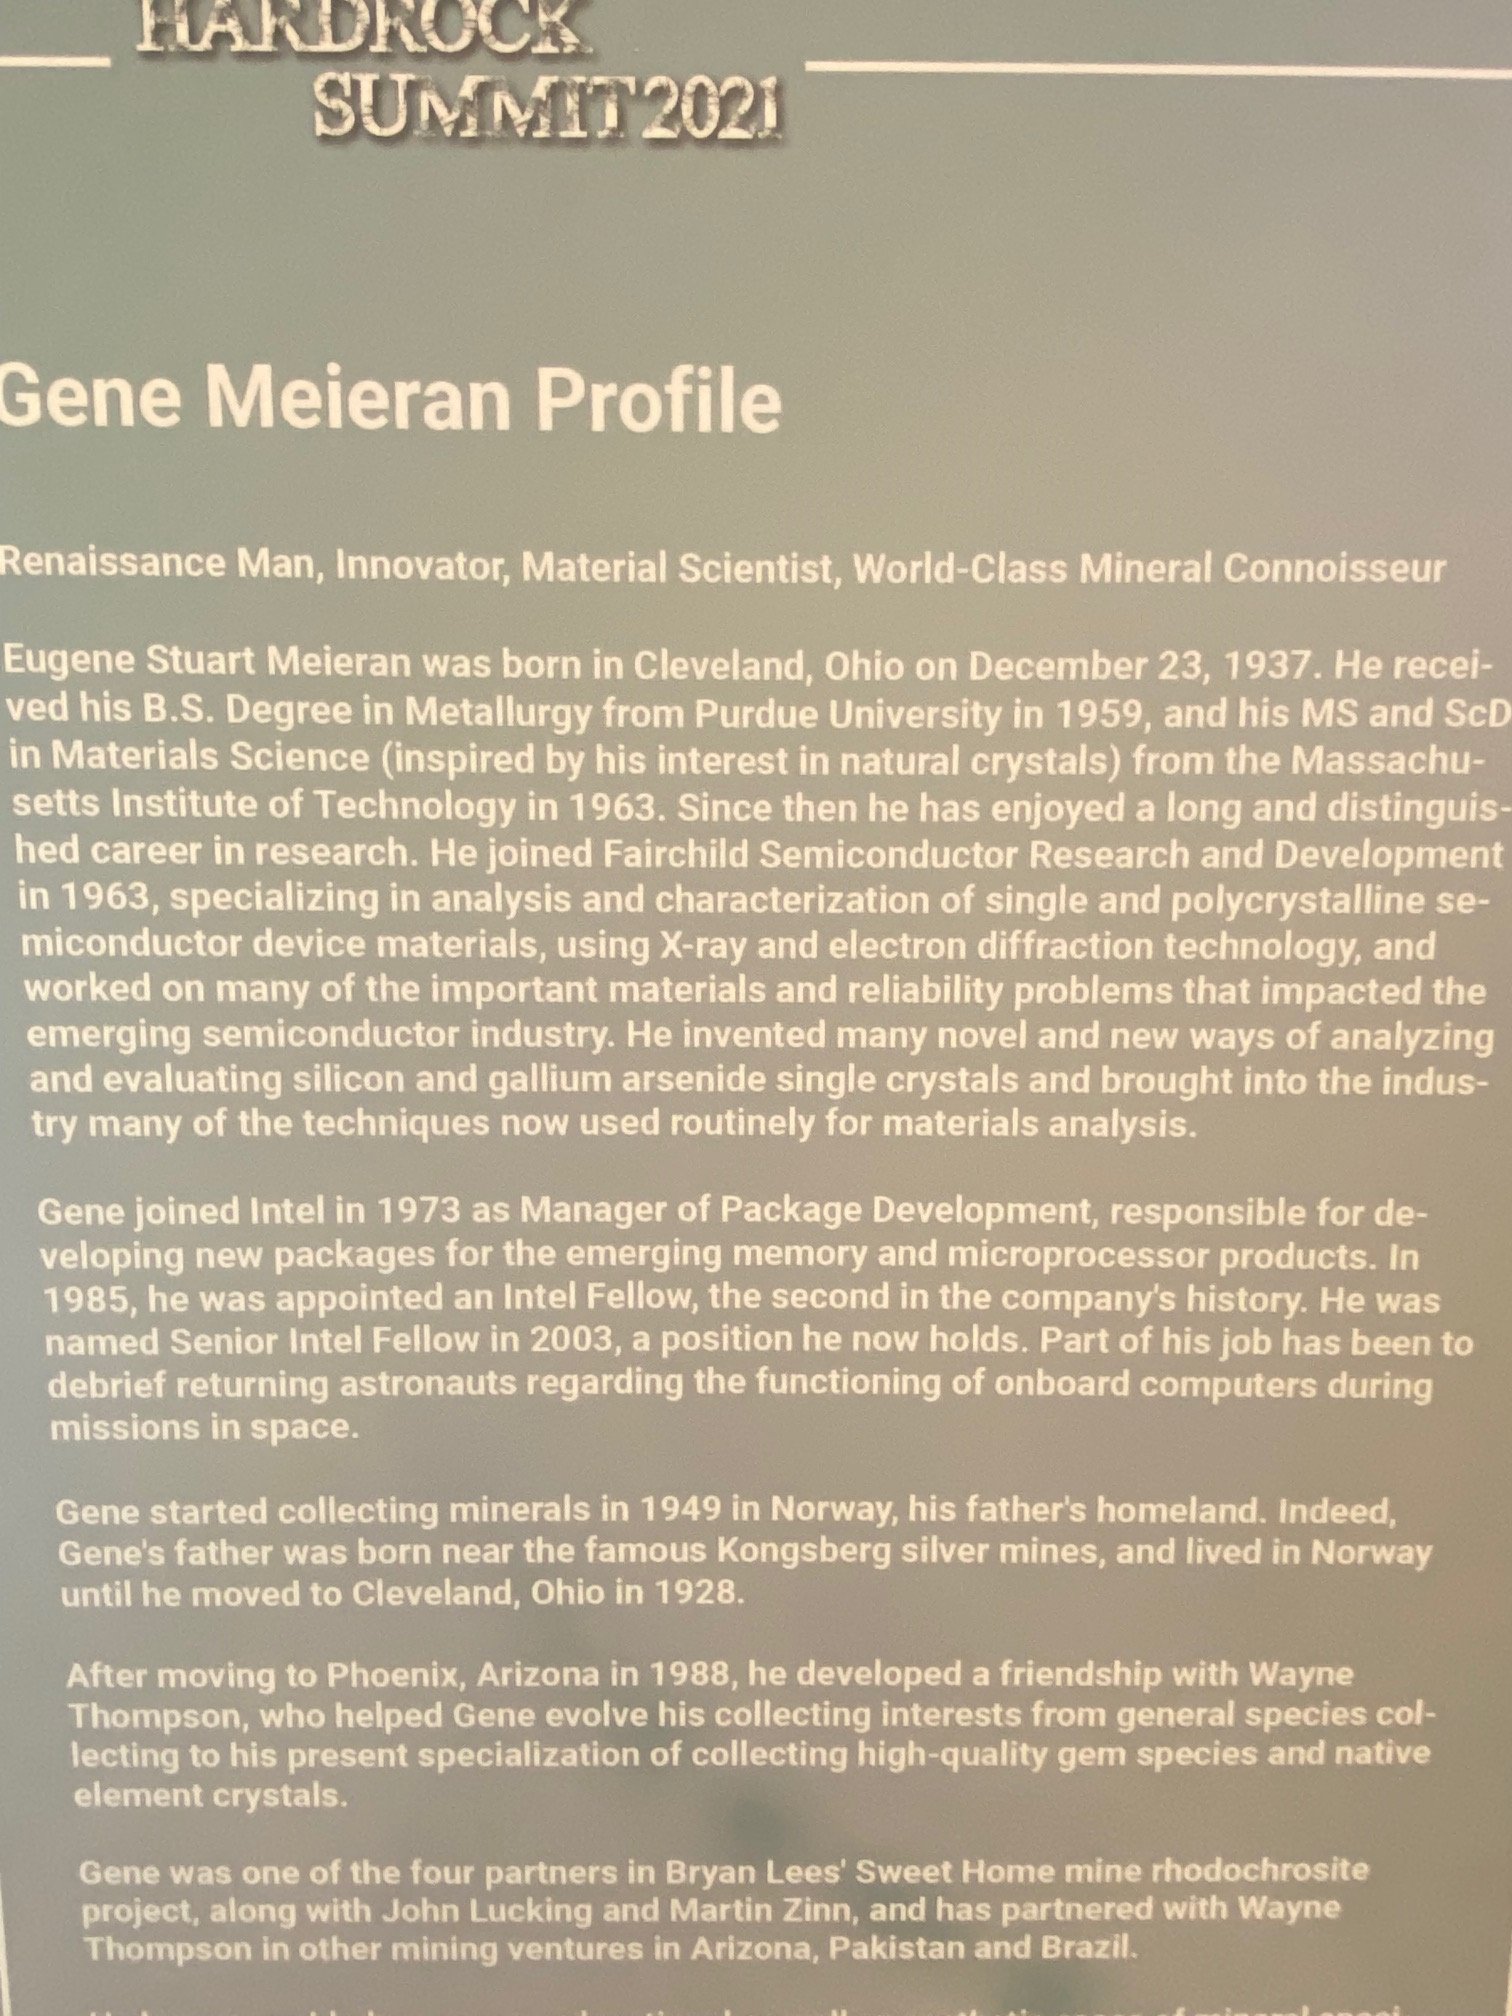 A little info on Gene Meieran